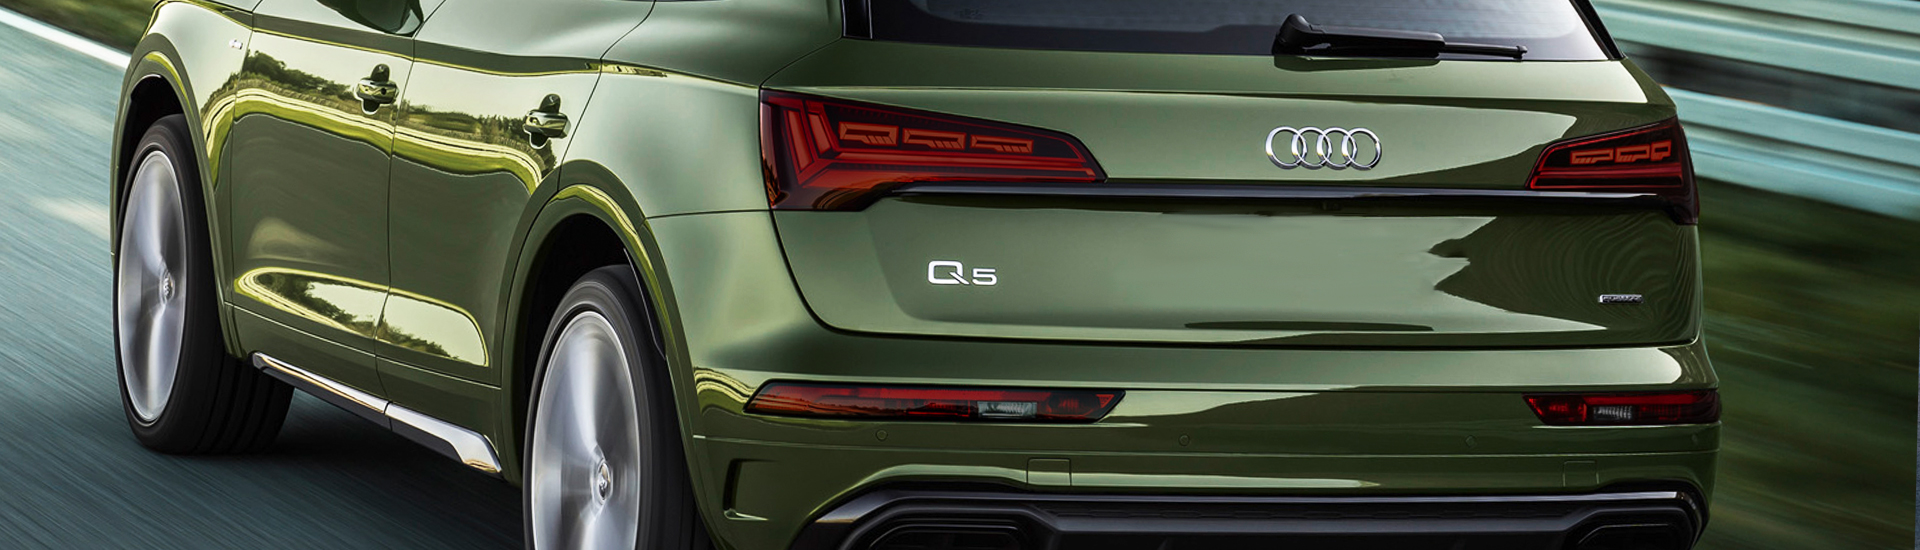 Audi Q5 Tail Light Tint Covers